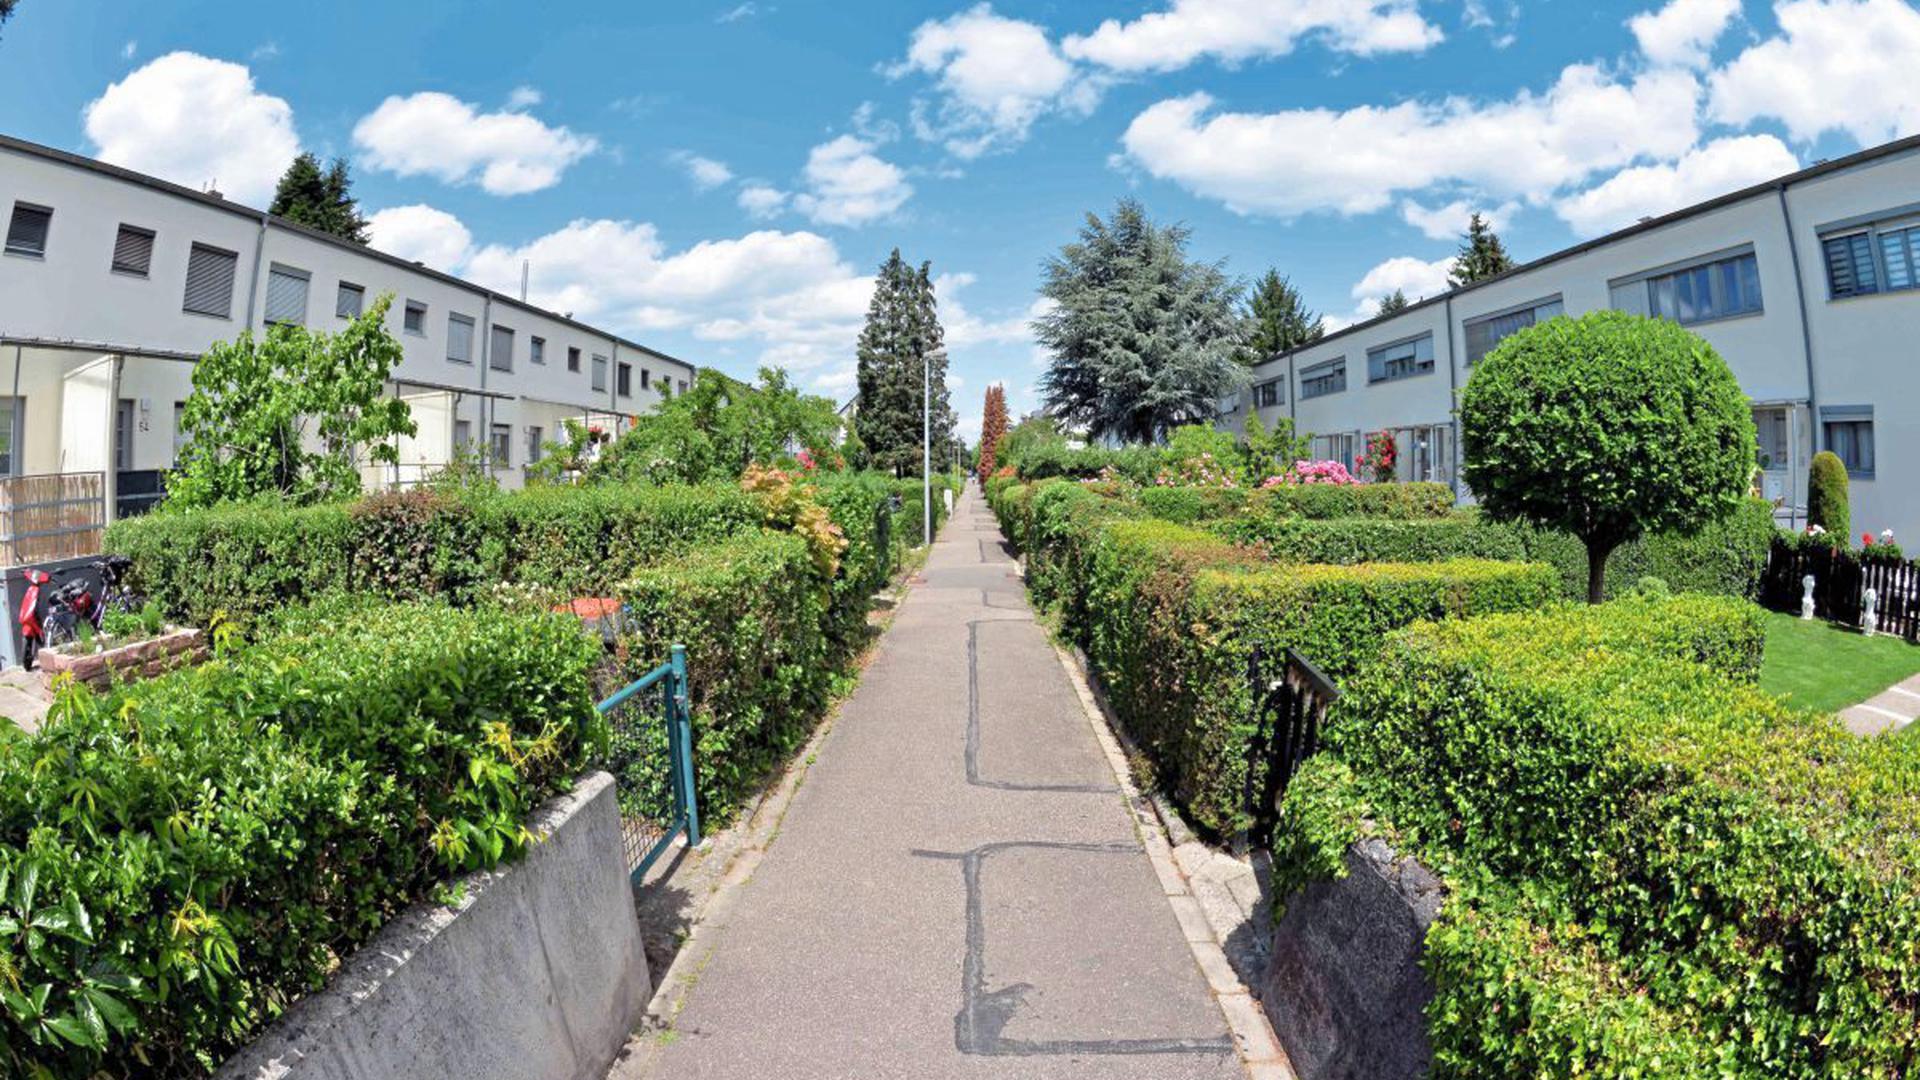 Die Siedlung Dammerstock in Karlsruhe ist ein frühes Beispiel für modernen Wohnungsbau. Sie erfüllt die Forderung der Weimarer Verfassung nach einer „gesunden“ Architektur, die die katastrophalen hygienischen Wohnbedingungen des 19. Jahrhunderts ablöst.